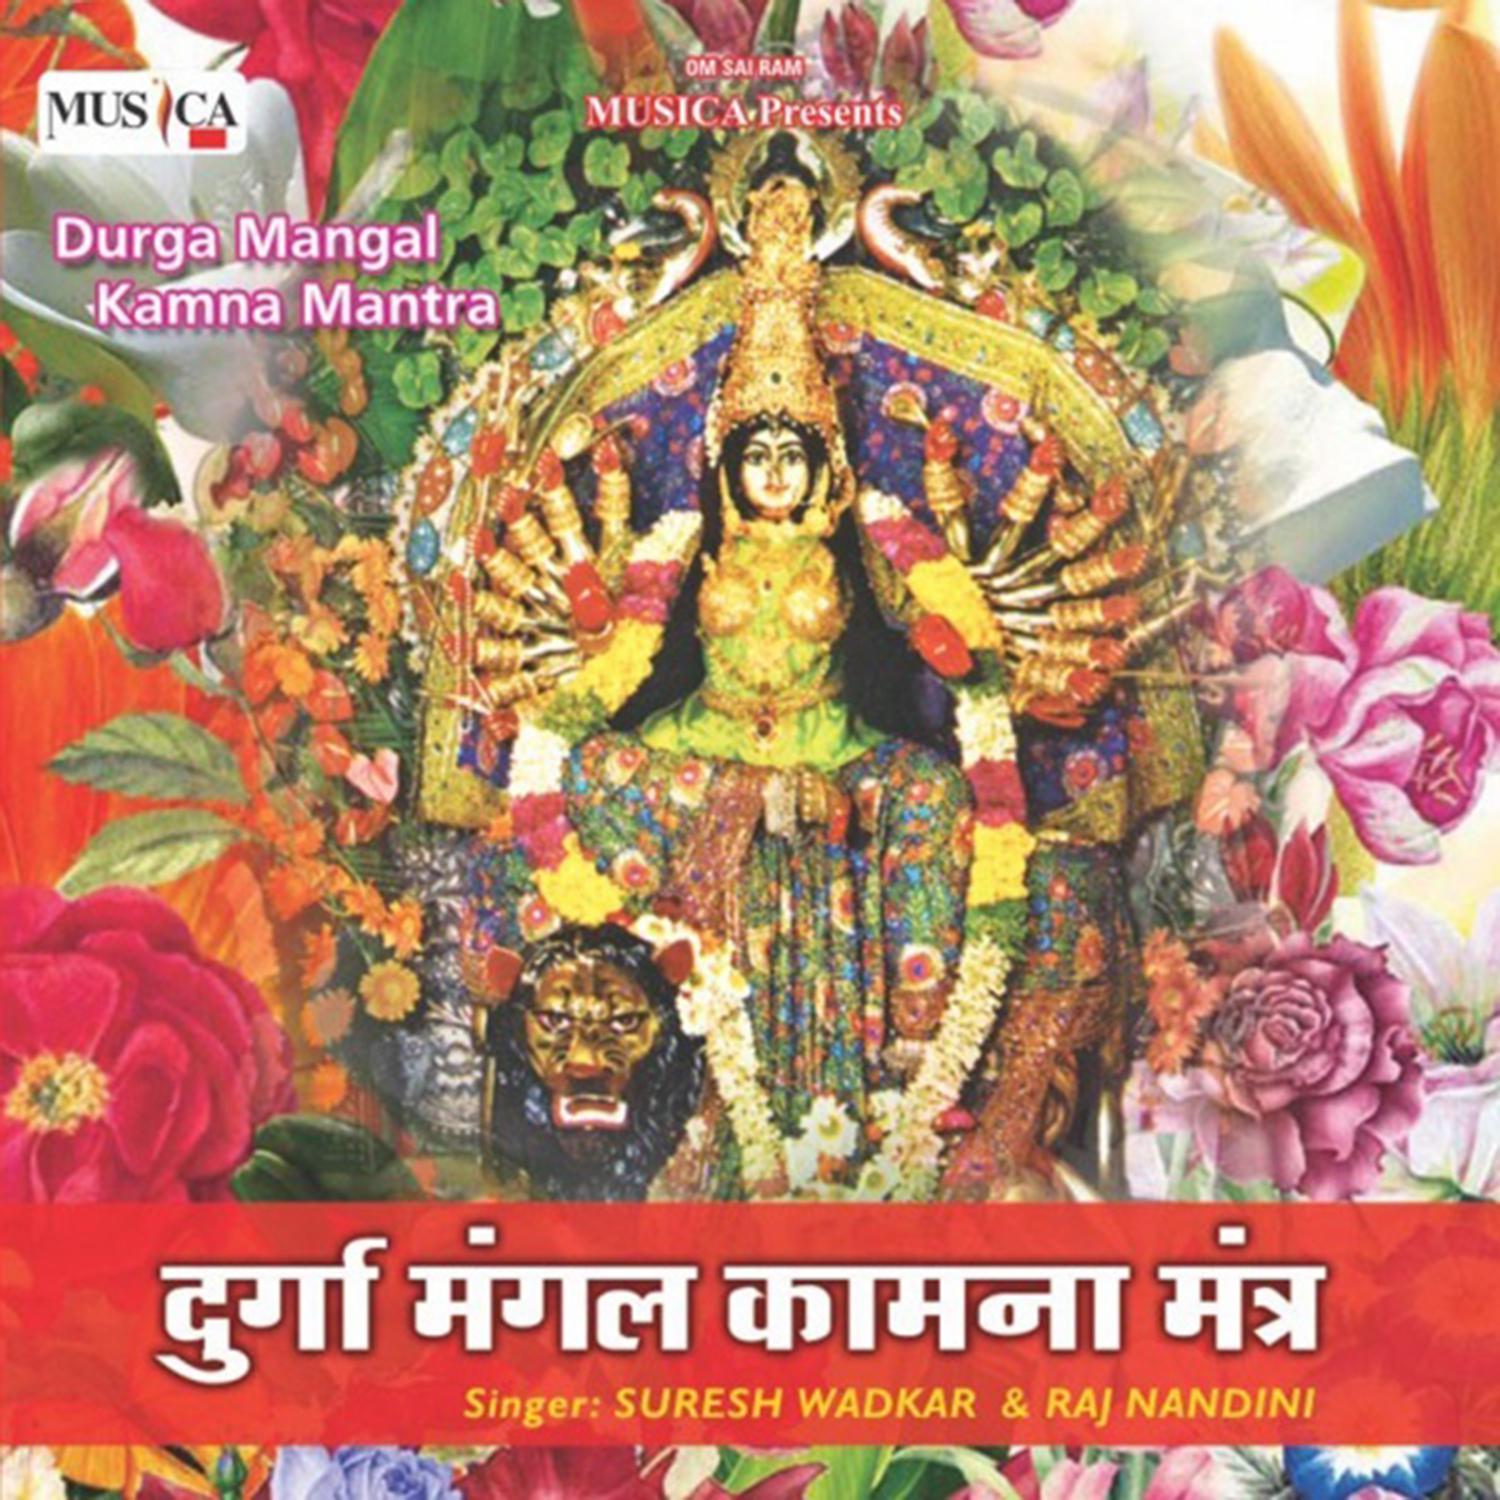 Om Shri Durge Durge Rakhshinee Swaha